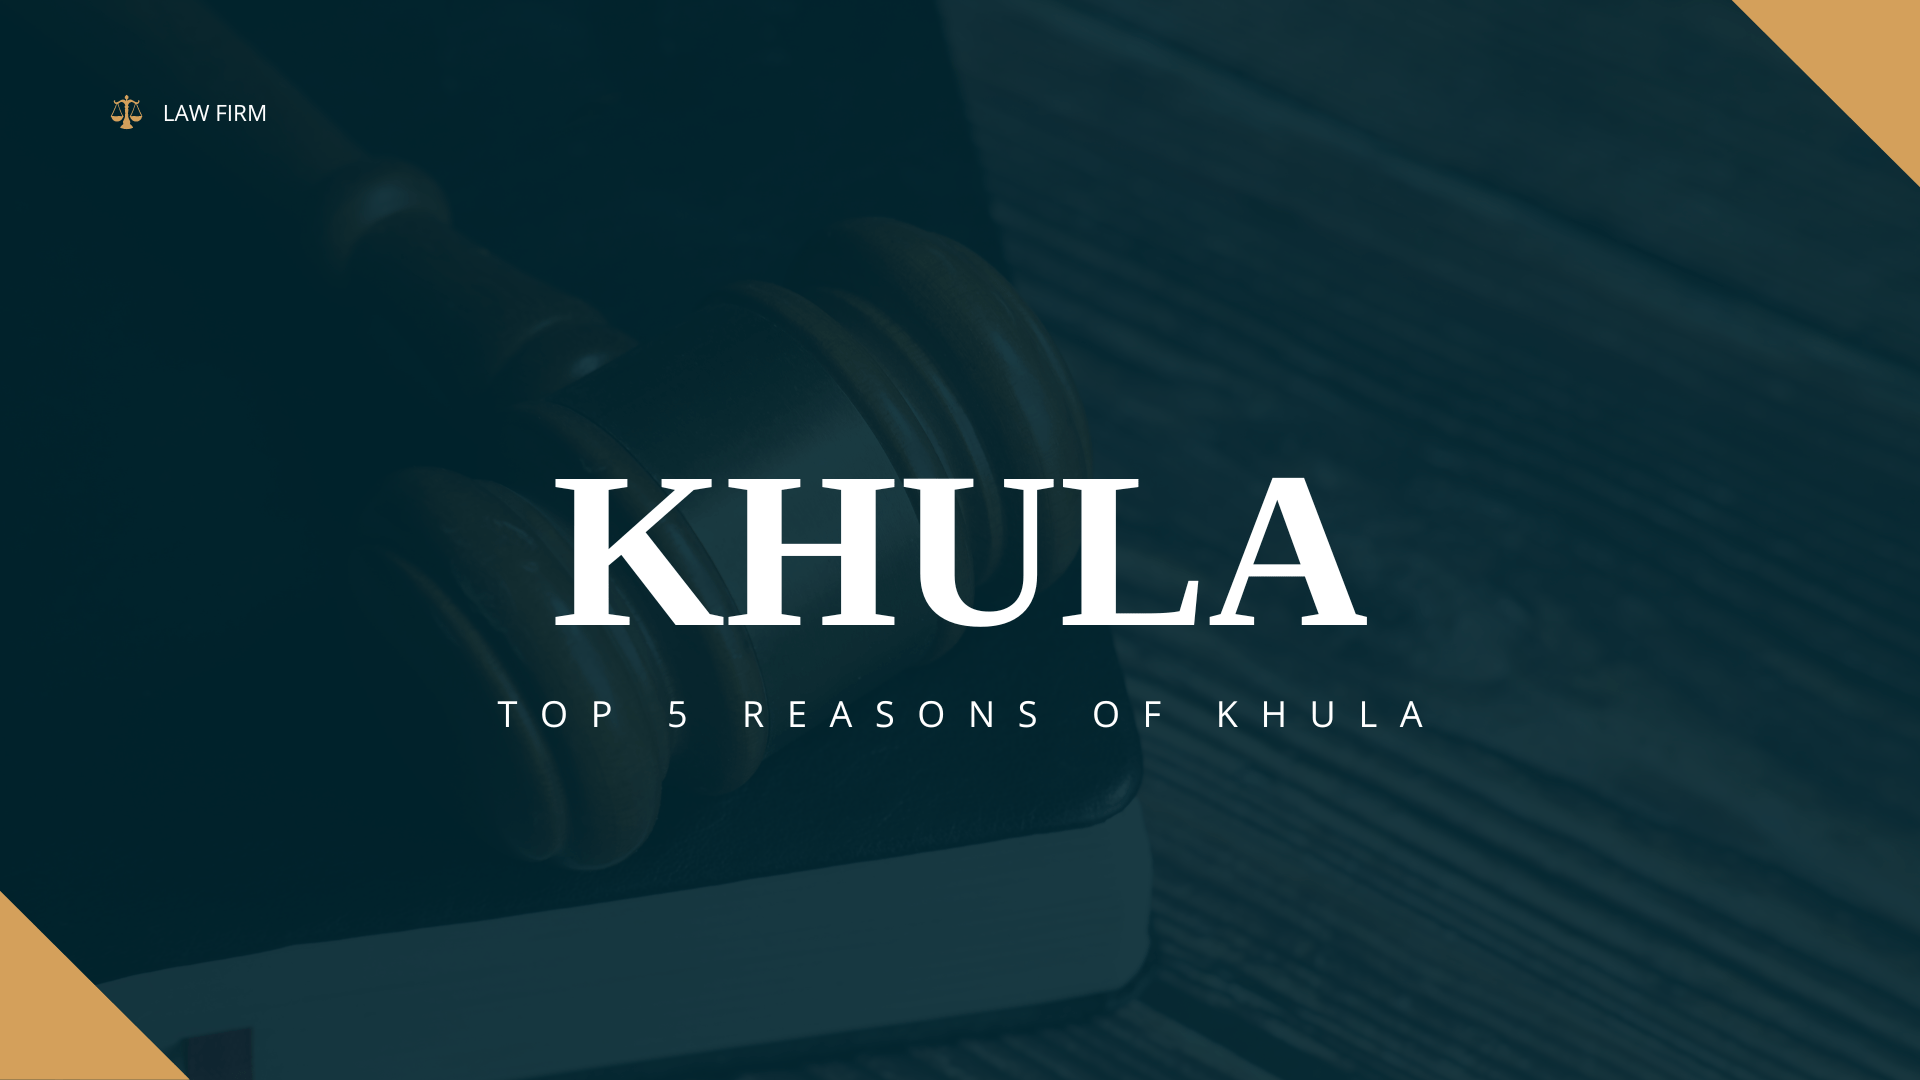 Top 5 Reasons of Khula